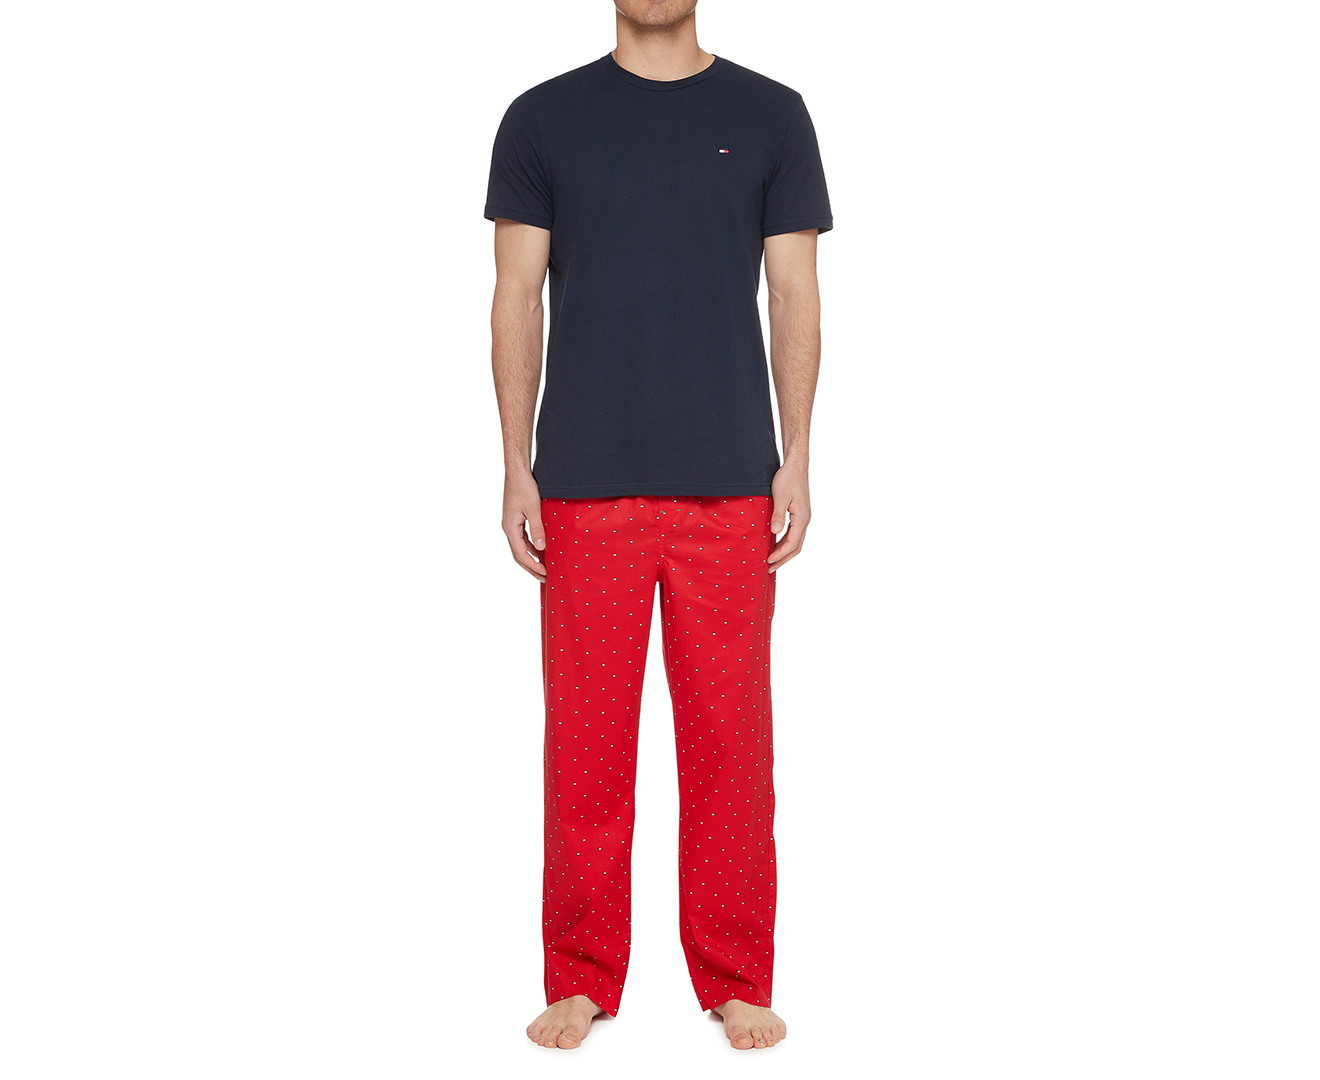 New Tommy Hilfiger 2pc Men's Cotton Poplin Pajama Sleep Set Pants Shirt  Medium